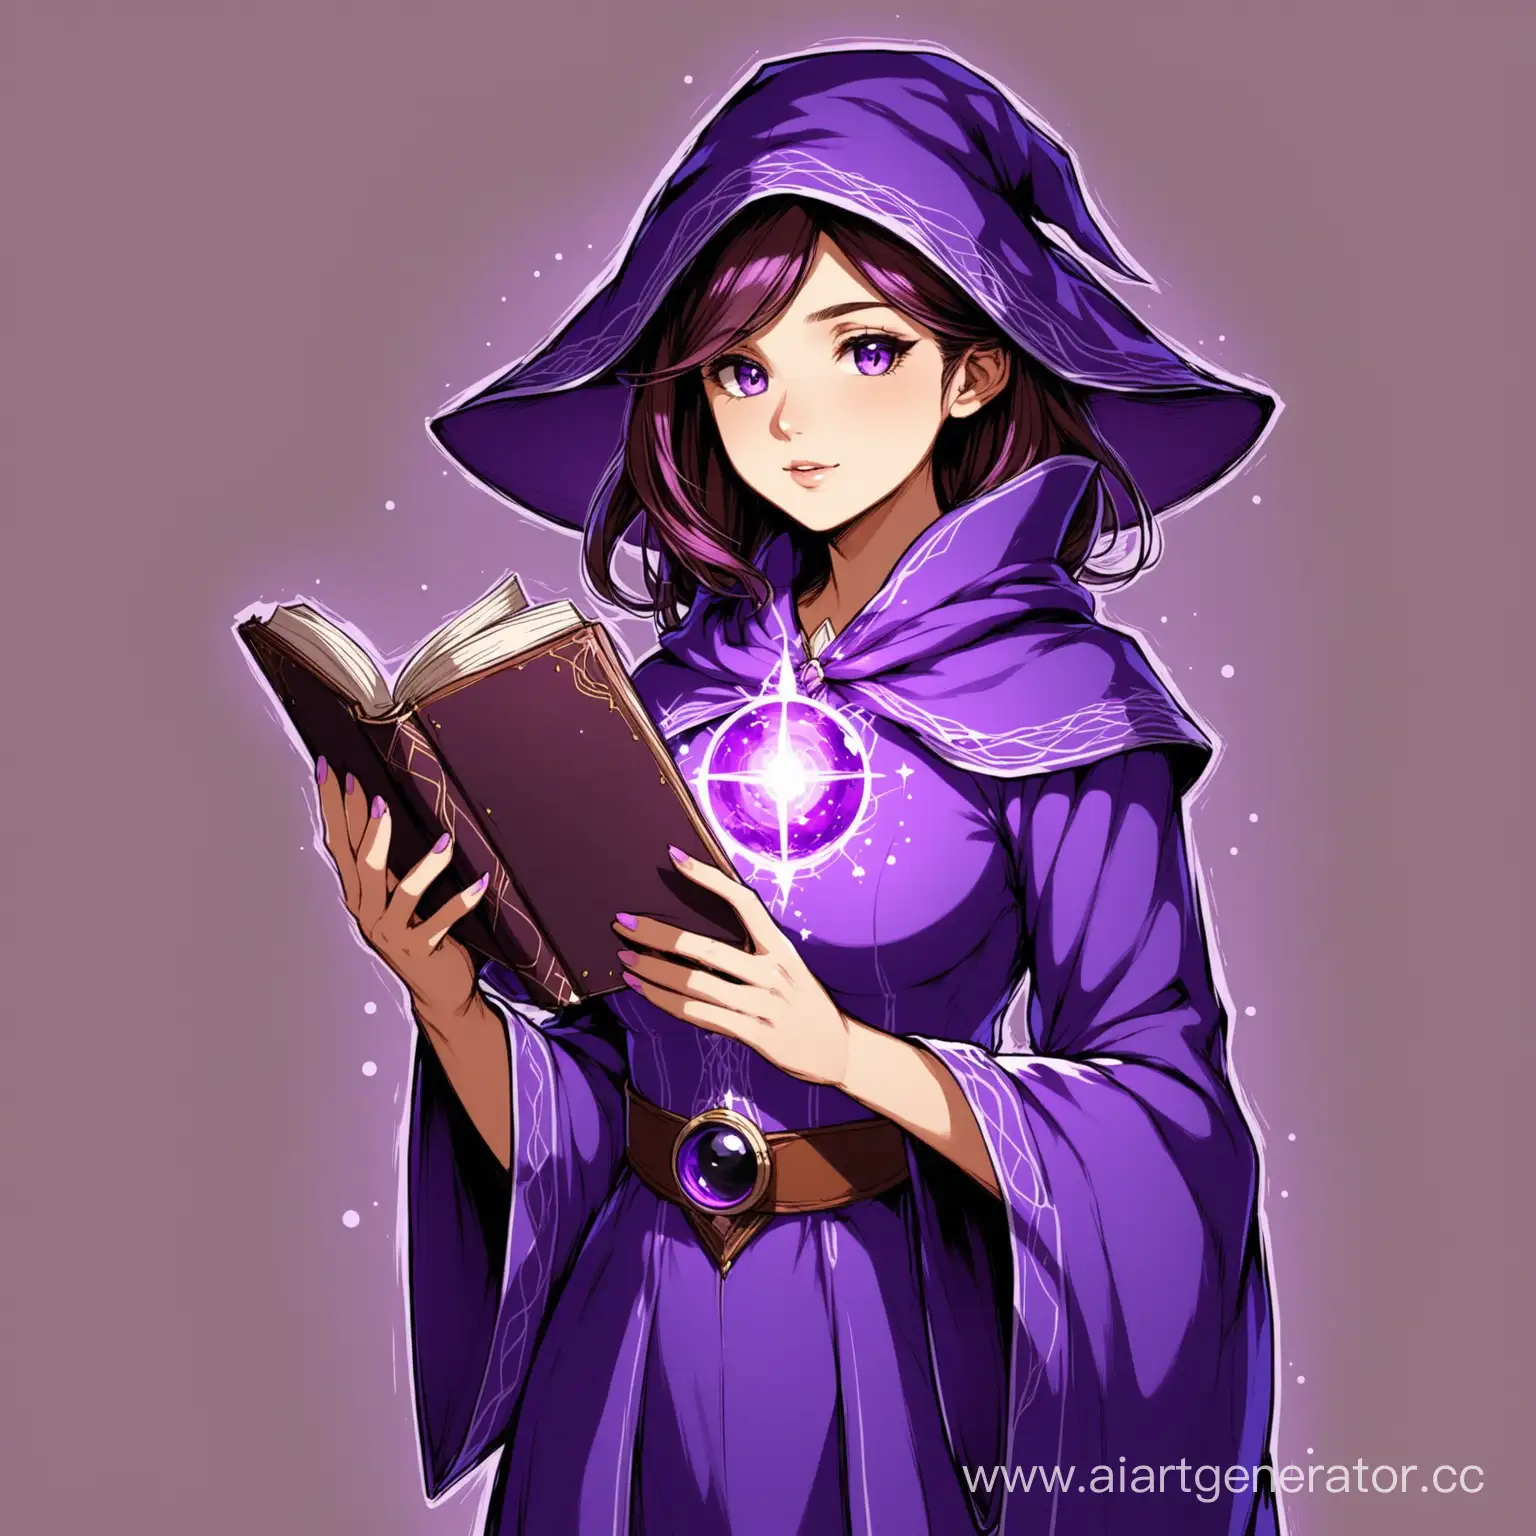 Ученый-маг женщина. На ней фиолетовое платье. В руках она держит книгу.